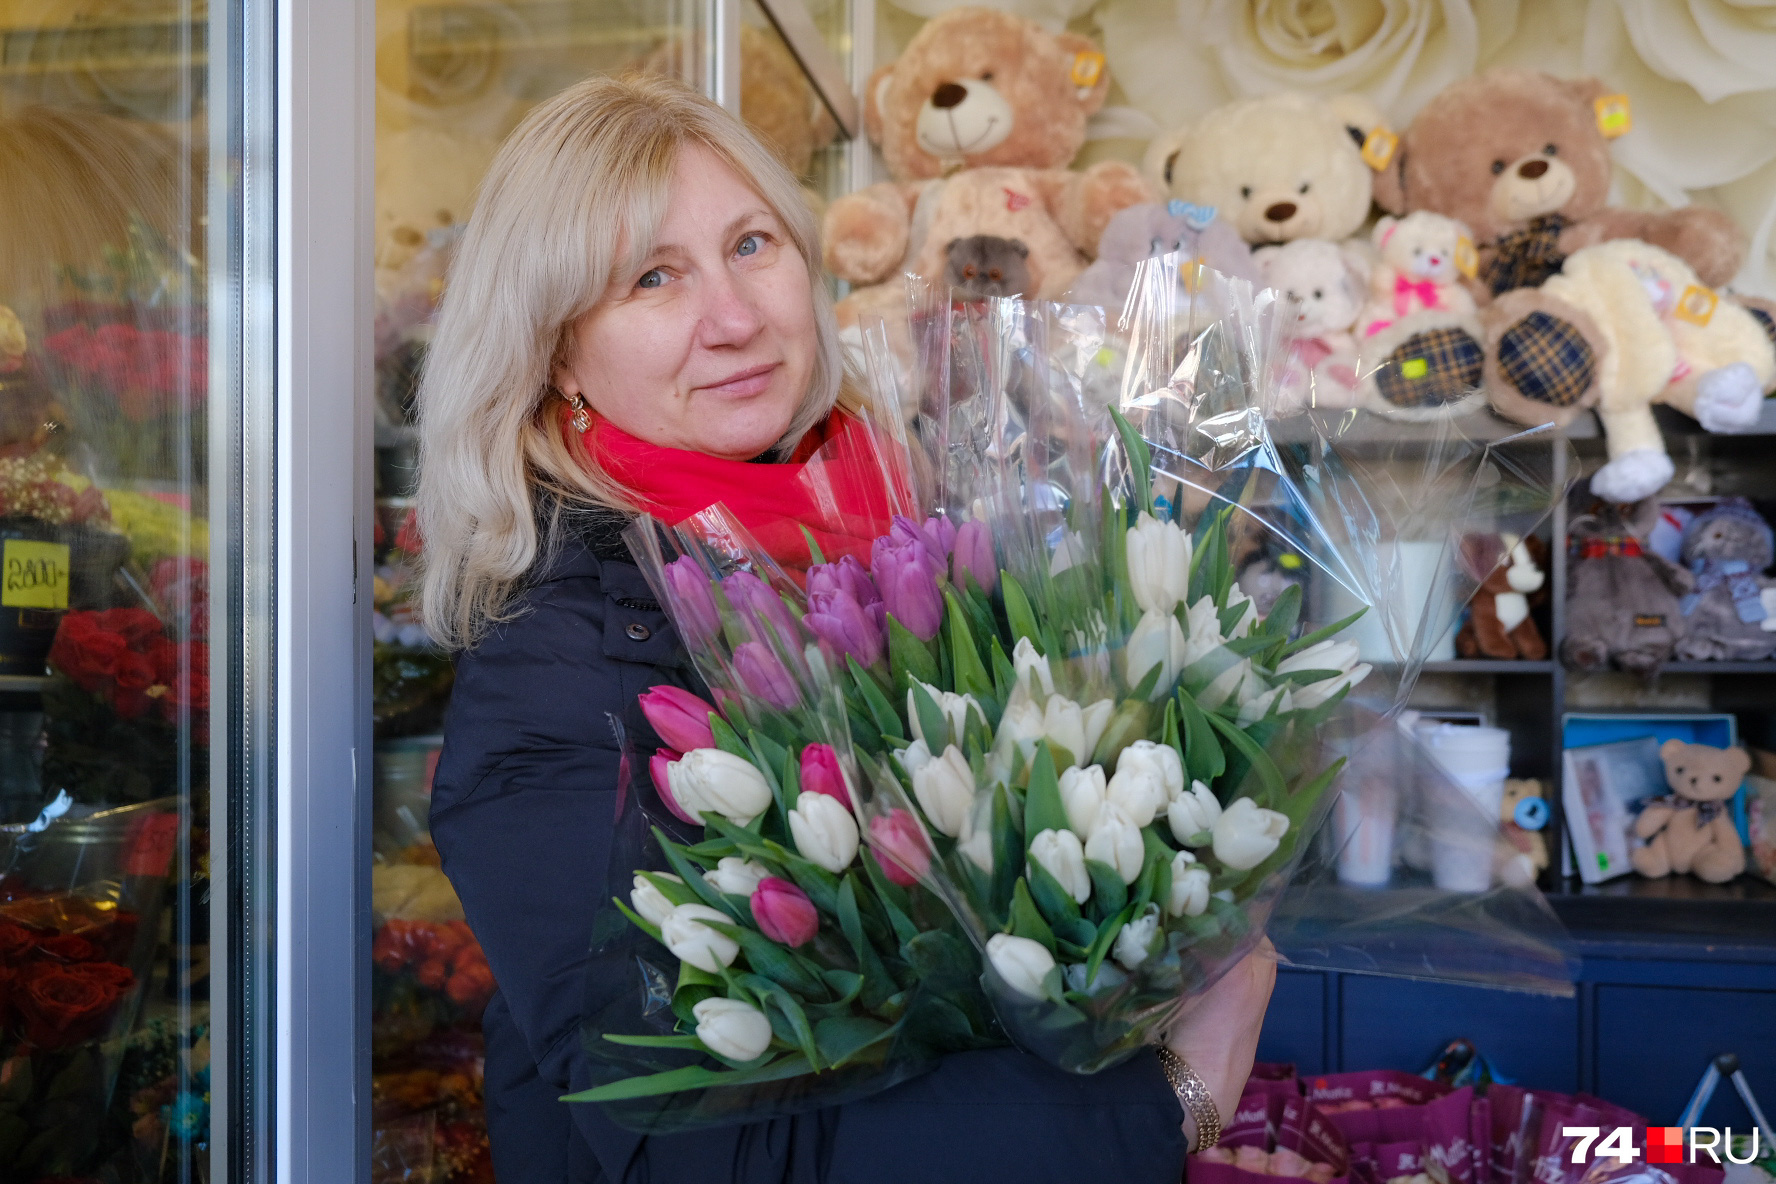 Флористы заказывают цветы у поставщиков из Краснодара, Подмосковья и с Урала: они дешевле